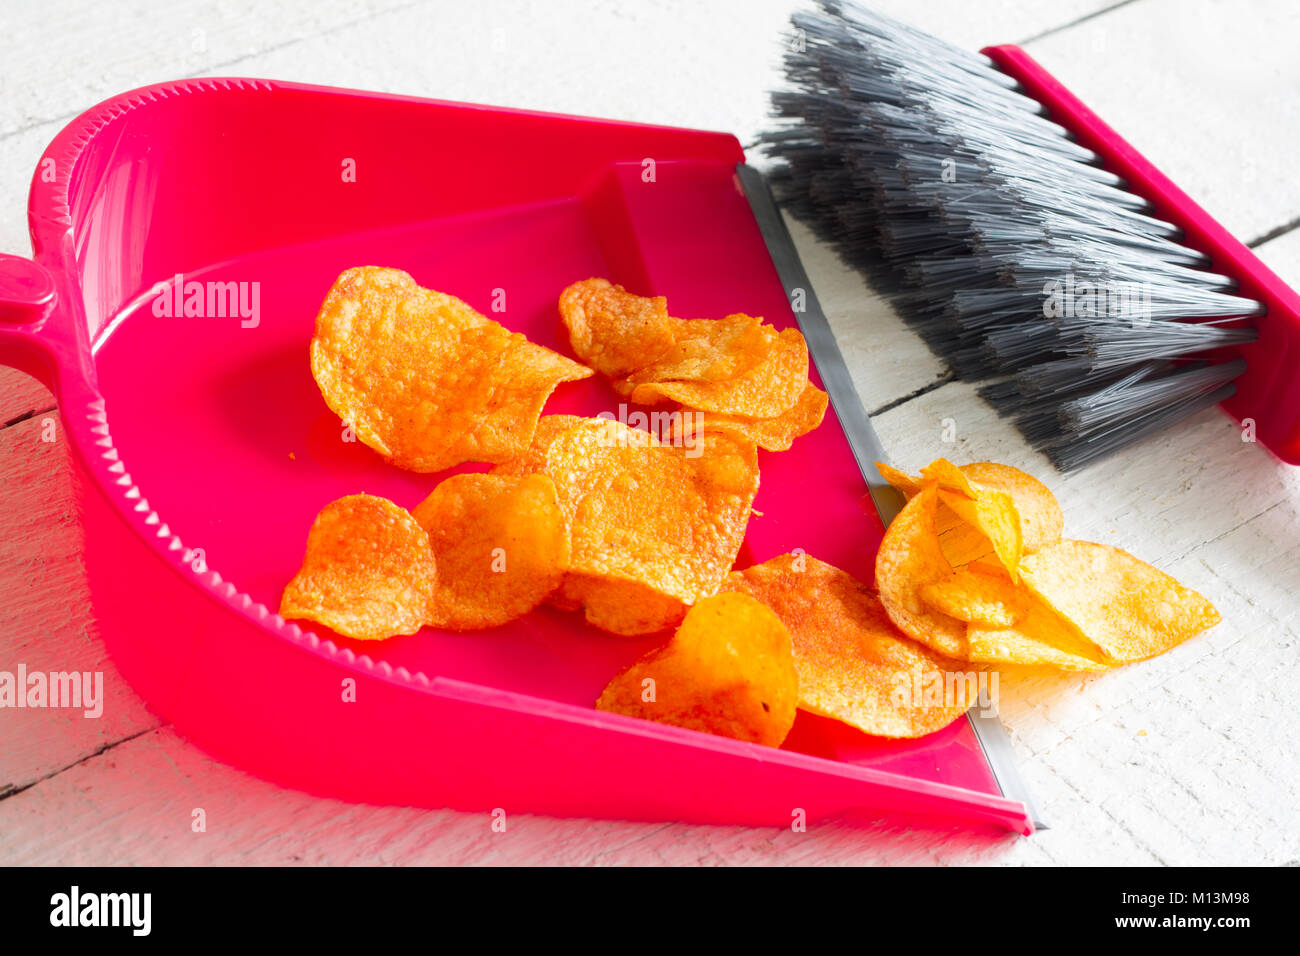 Fegen Junk Food mit Chips und Kehrblech Konzept der Gesundheit detox Diät Stockfoto